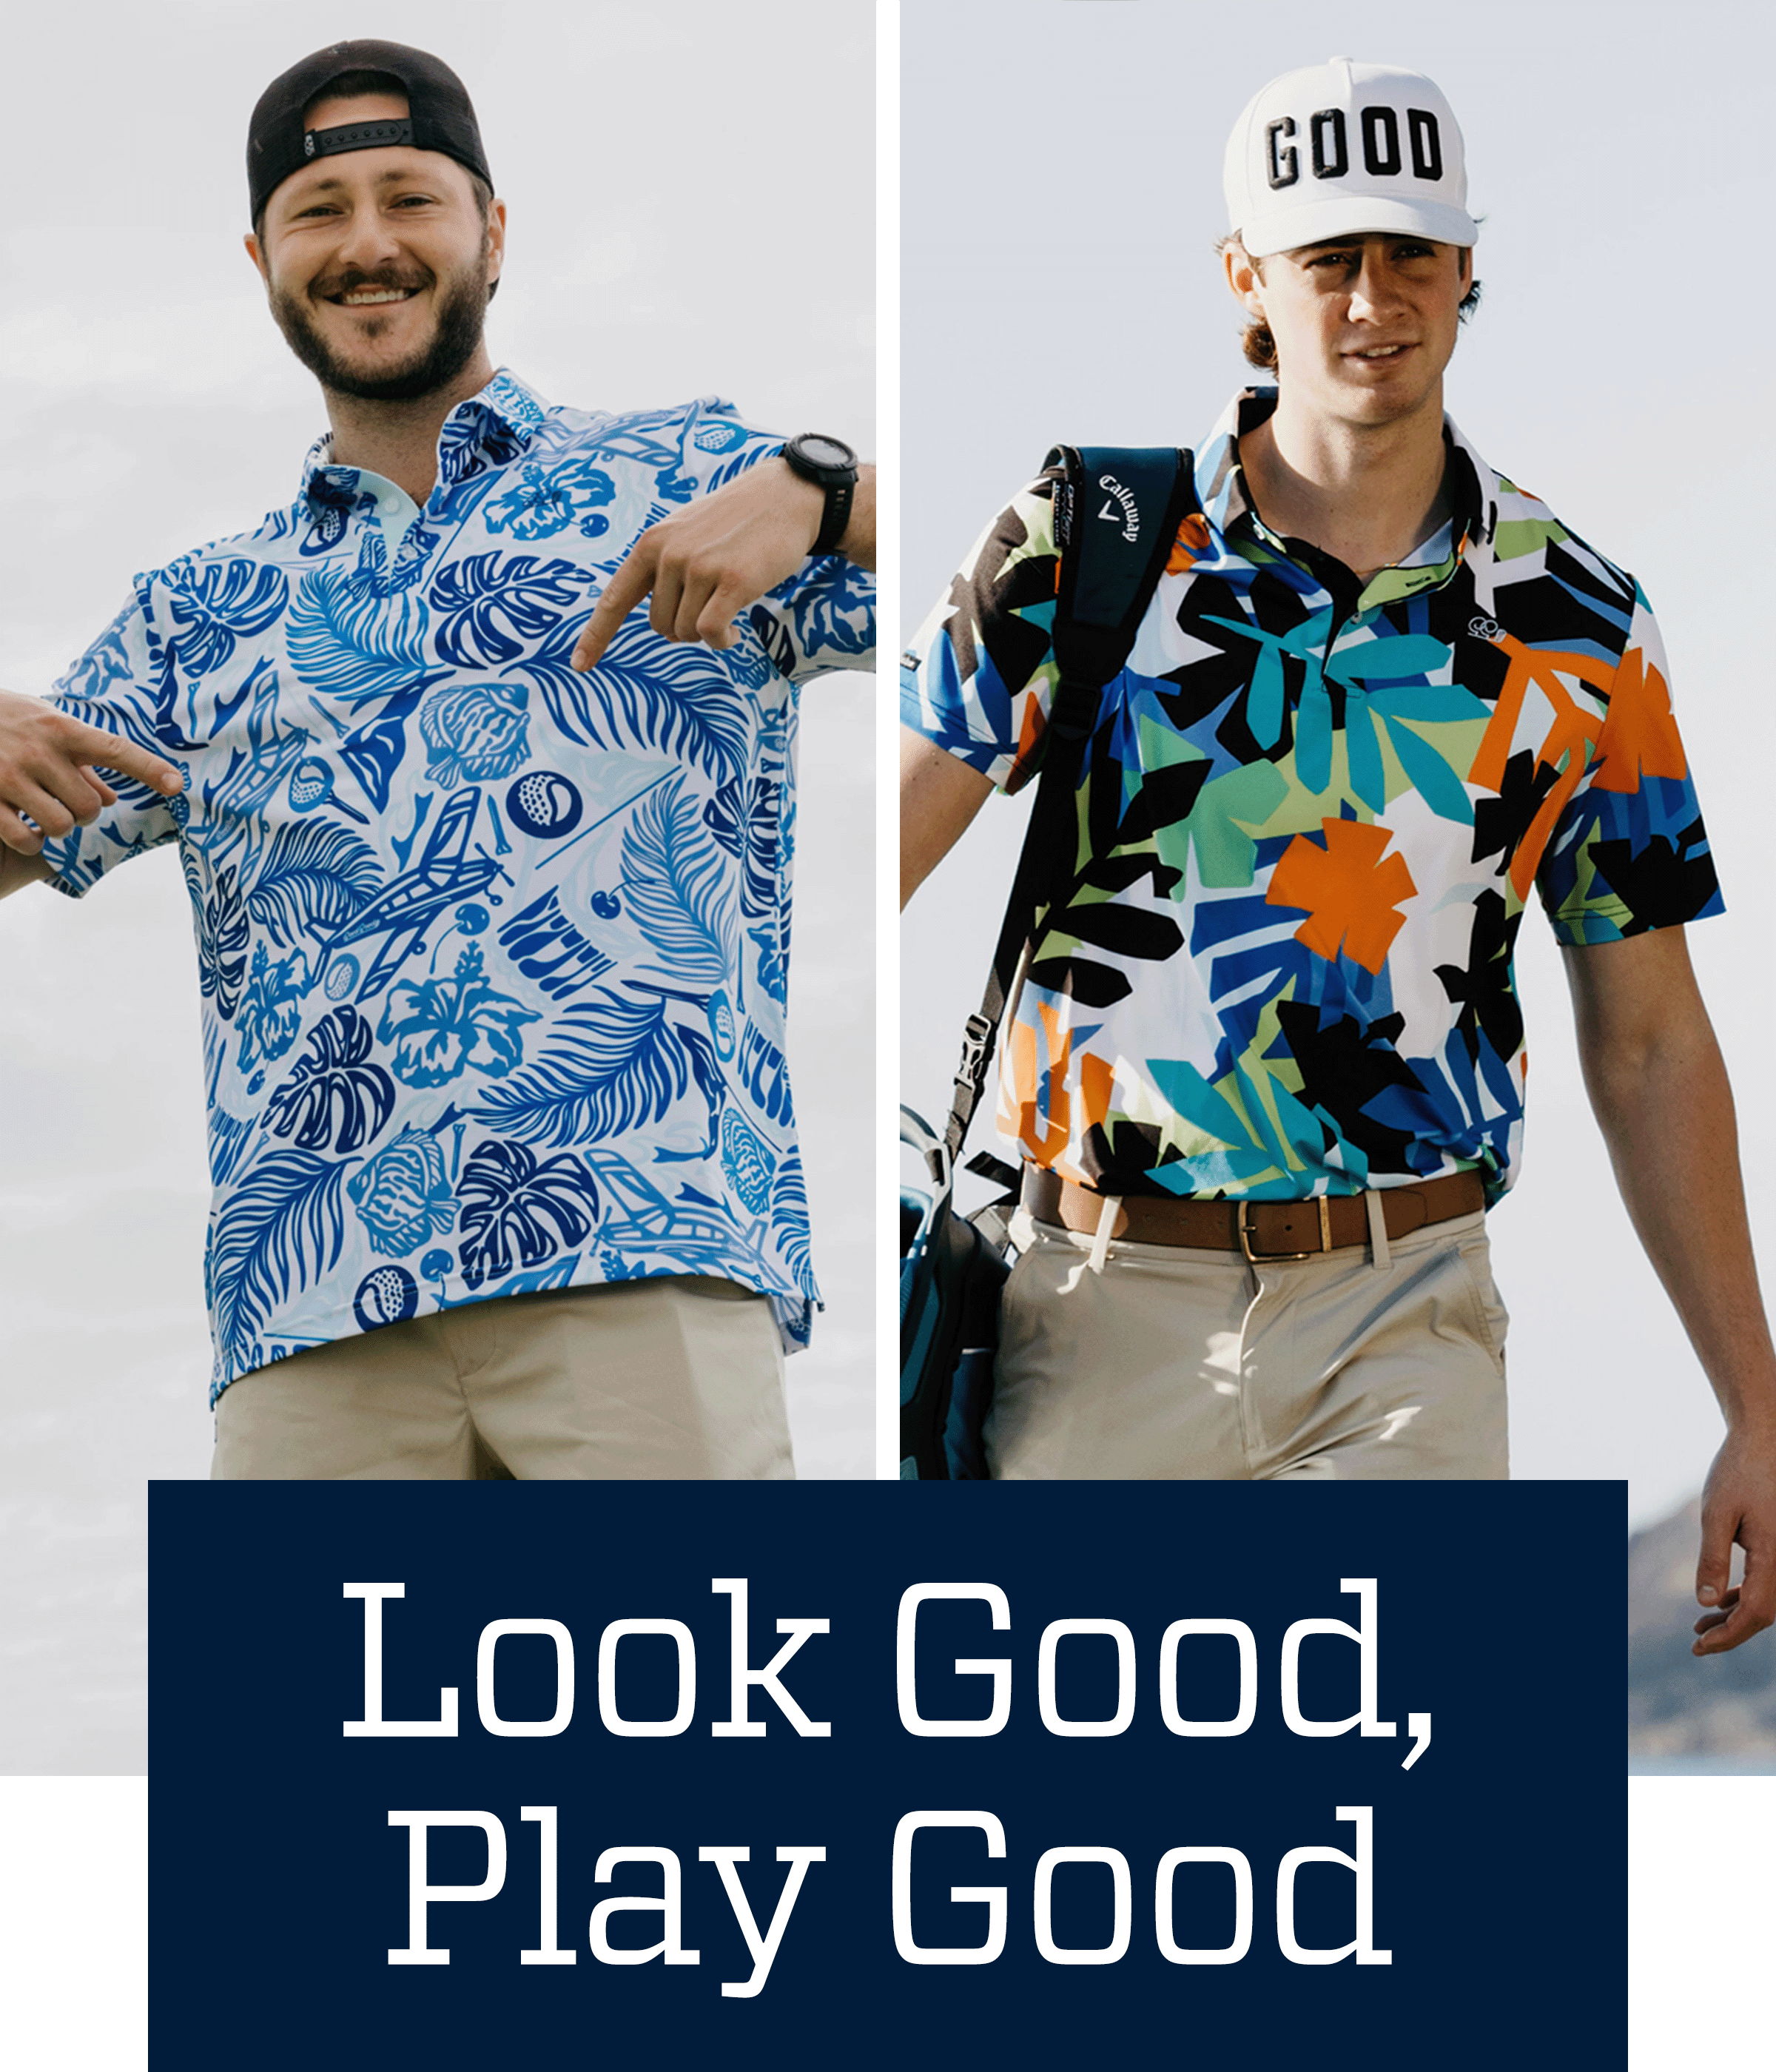  Look good, play good.